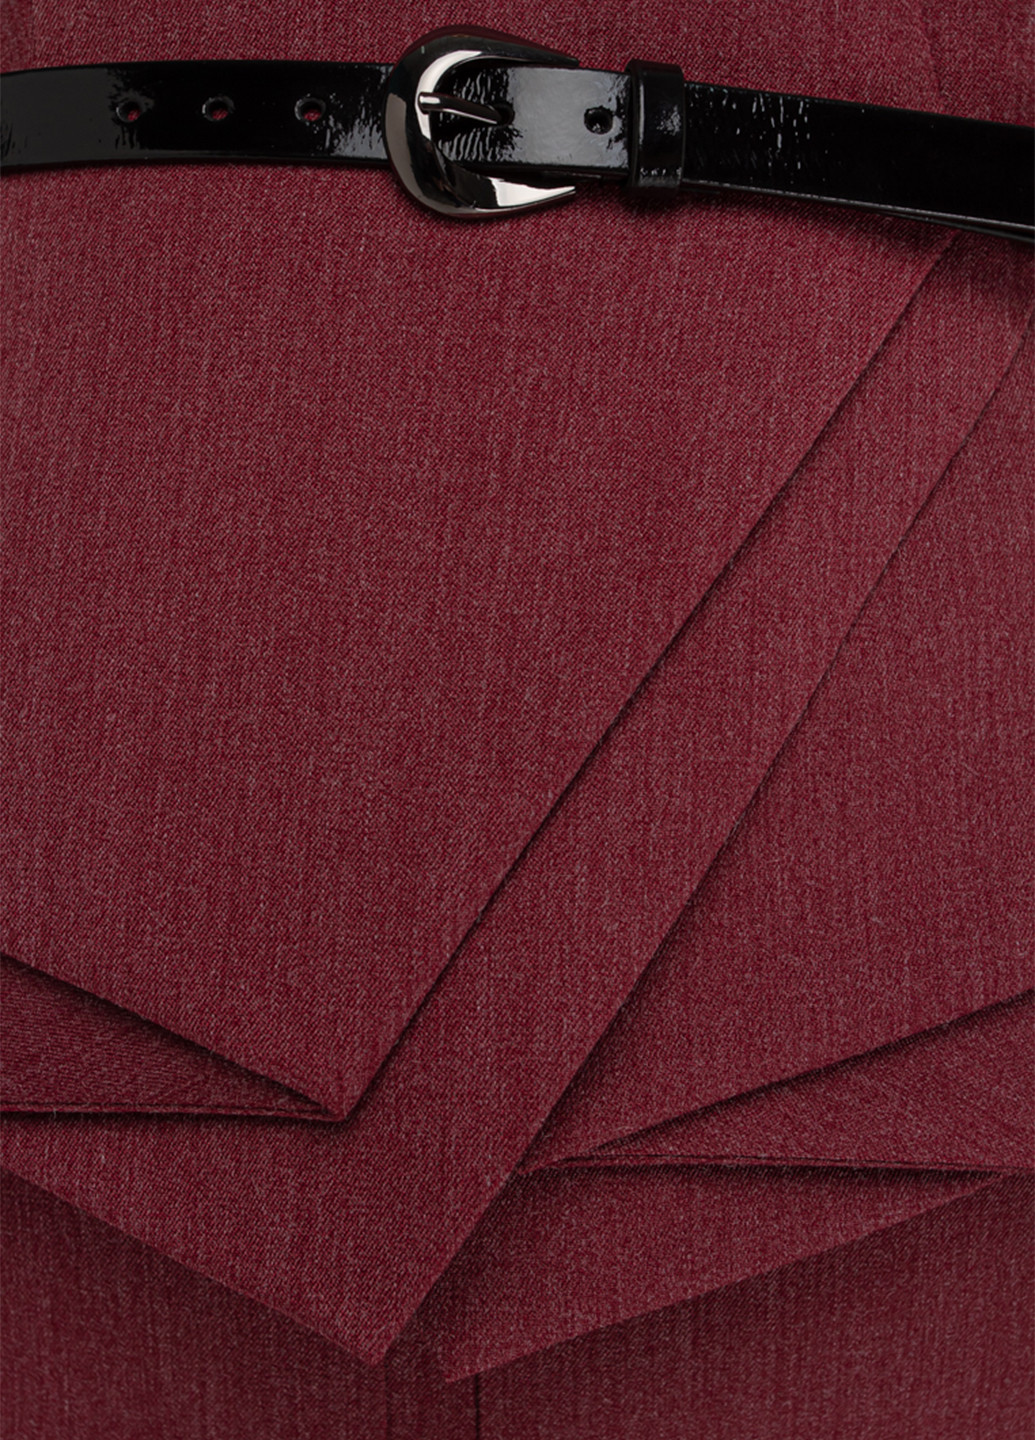 Костюм (жакет, юбка) BGL Комплект (жакет и юбка) юбочный однотонный бордовый деловой шерсть